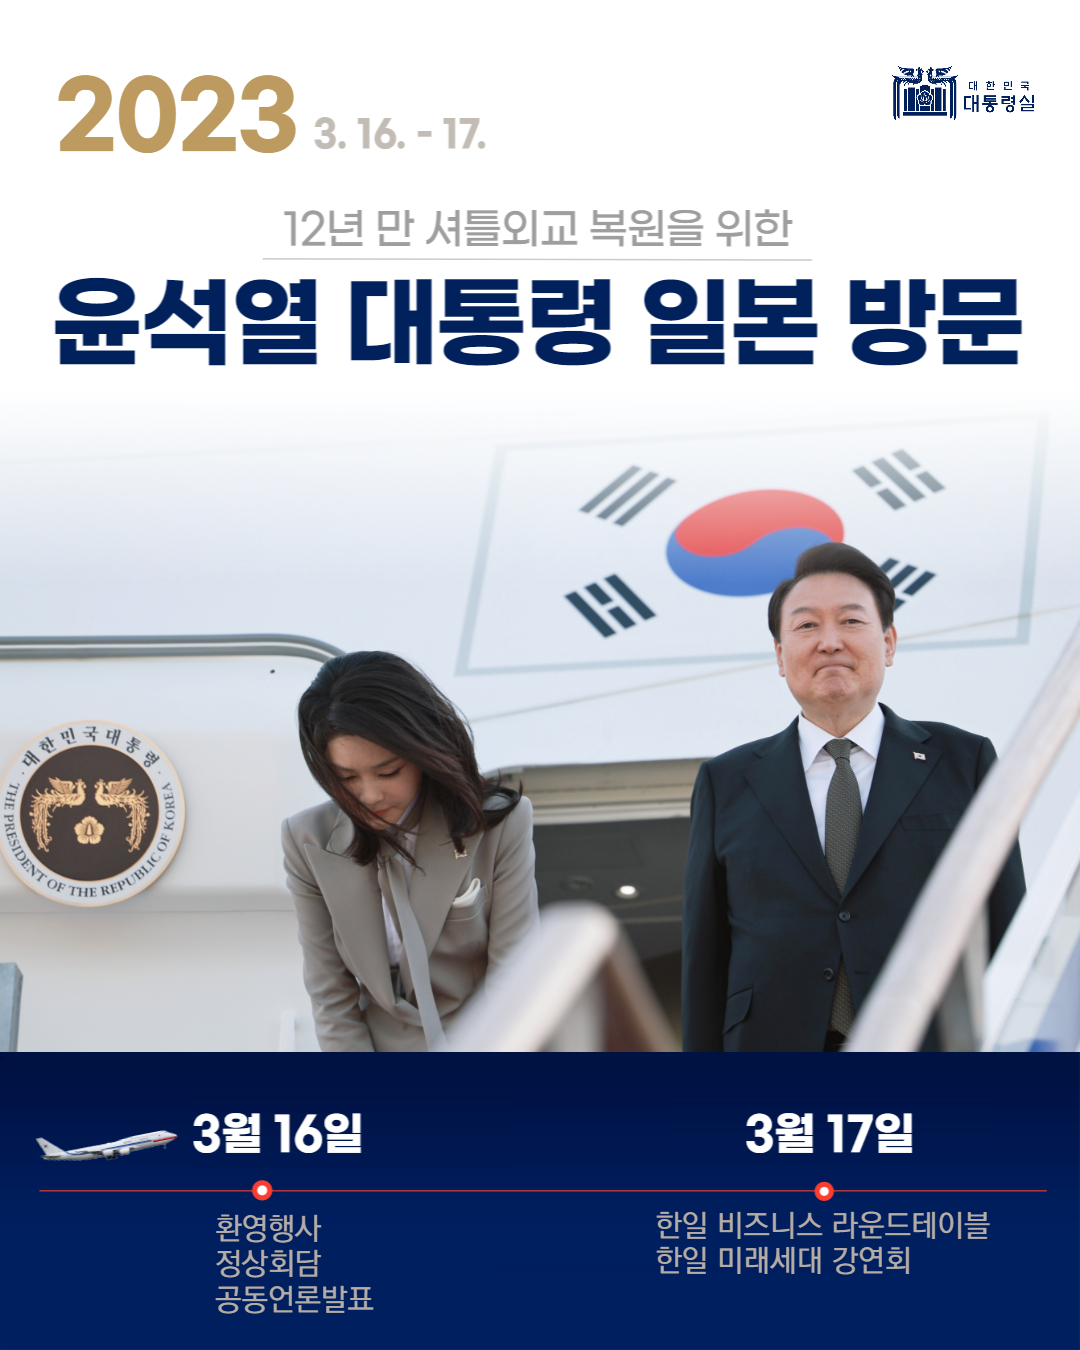 12년 만 셔틀외교 복원을 위한 윤석열 대통령 일본 방문! 슬라이드1